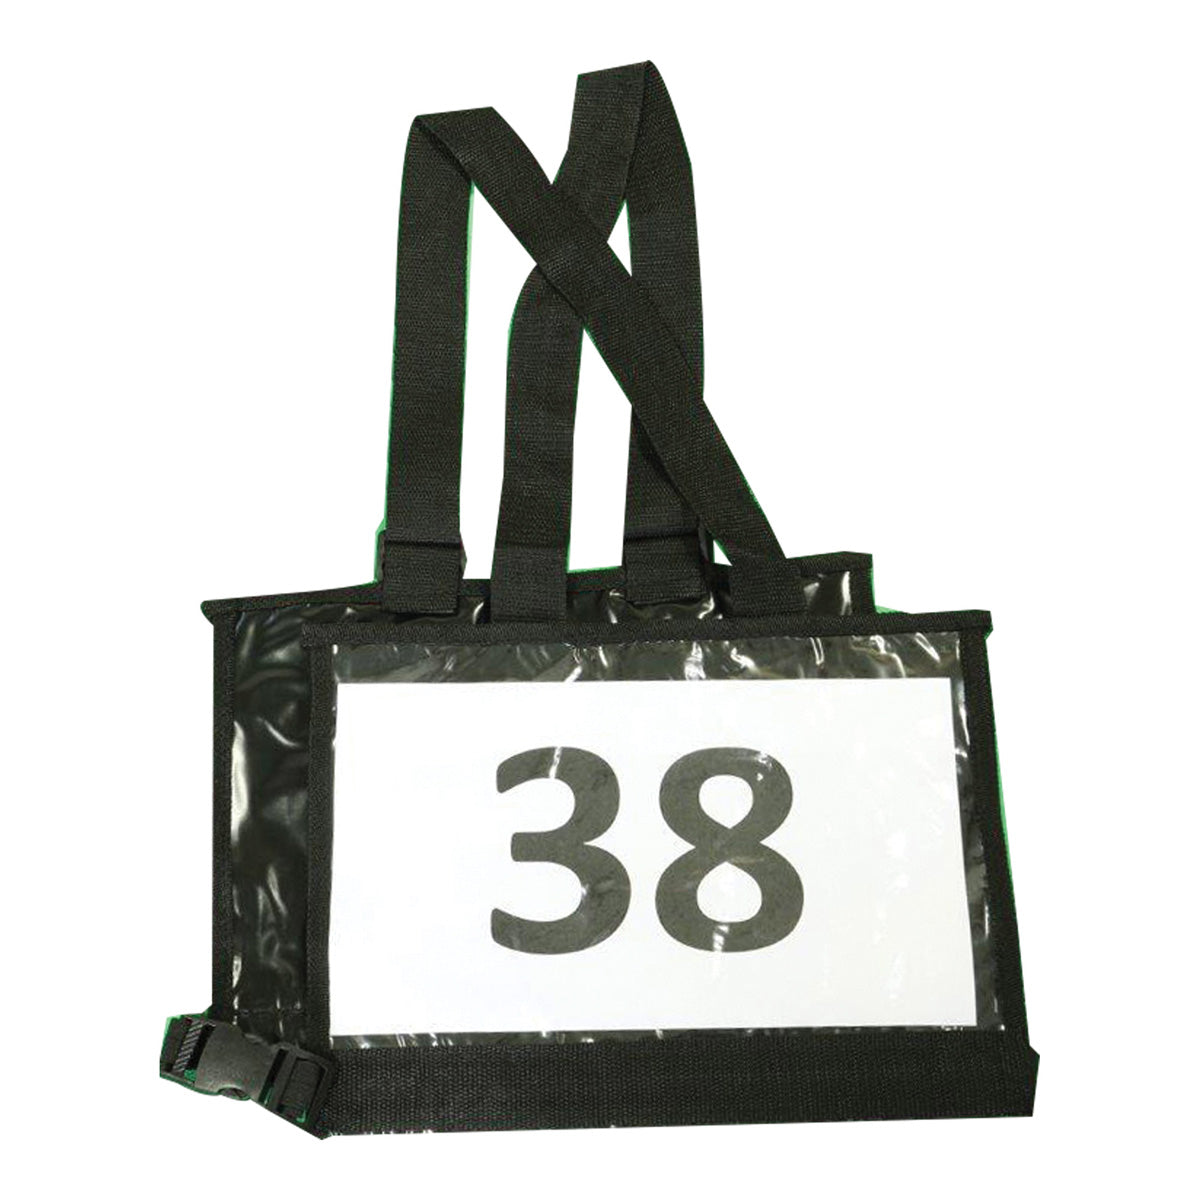 Competition Number Holder Vest - Adjustable Black